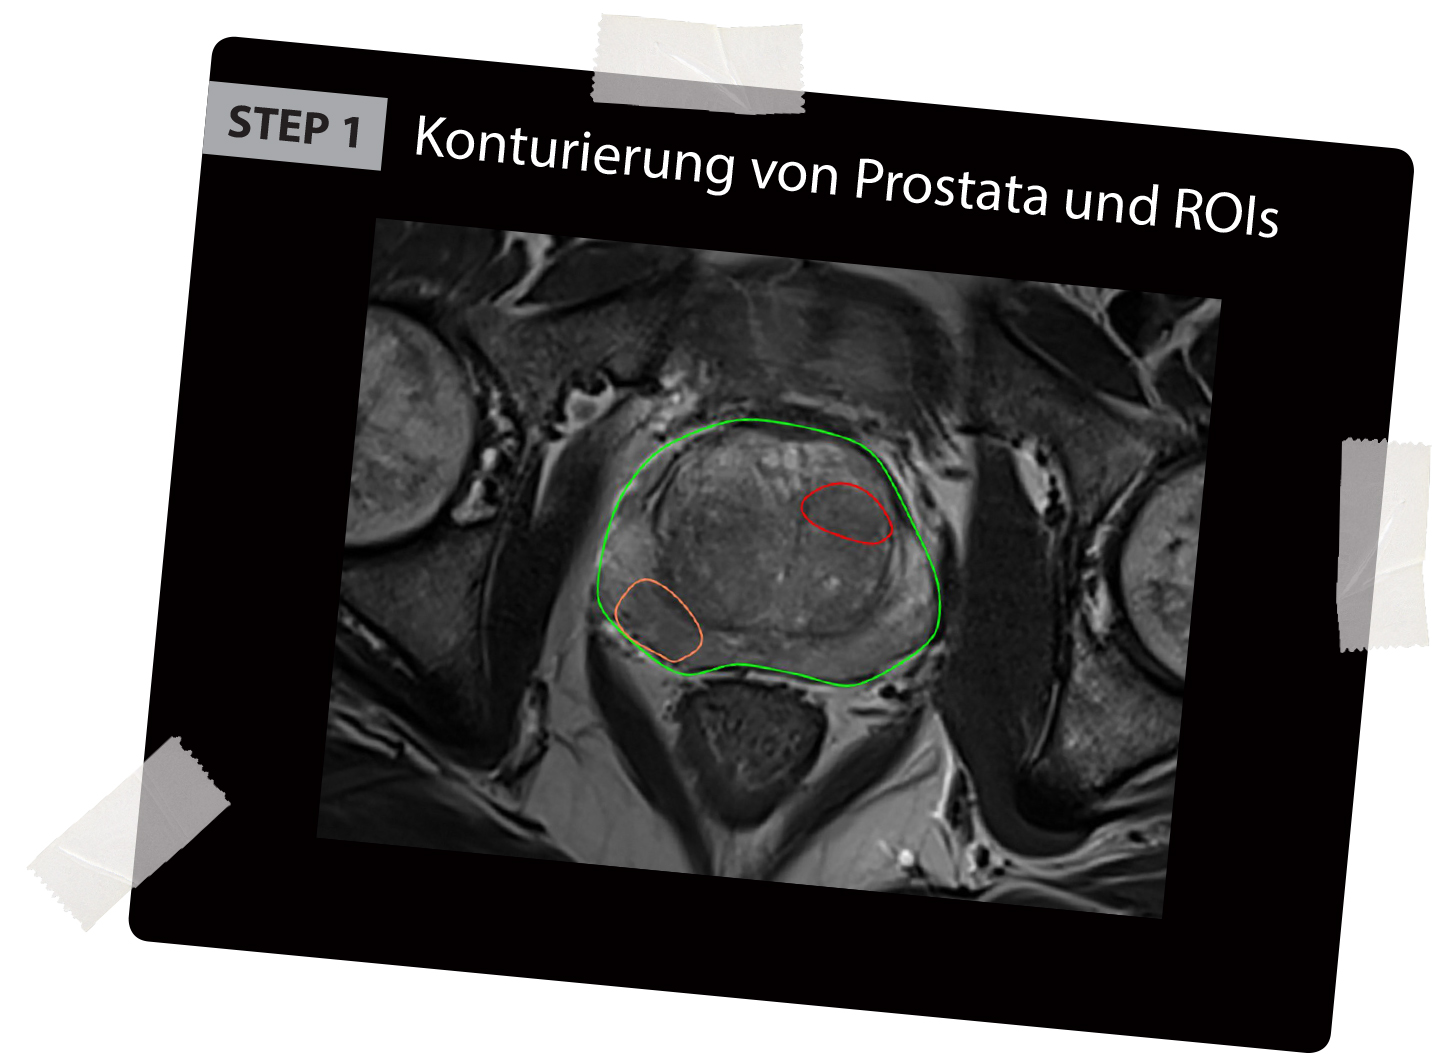 BioJet MRT Fusion erster Schritt Konturierung der Prostata sowie der verdächtigen Areale im MRT